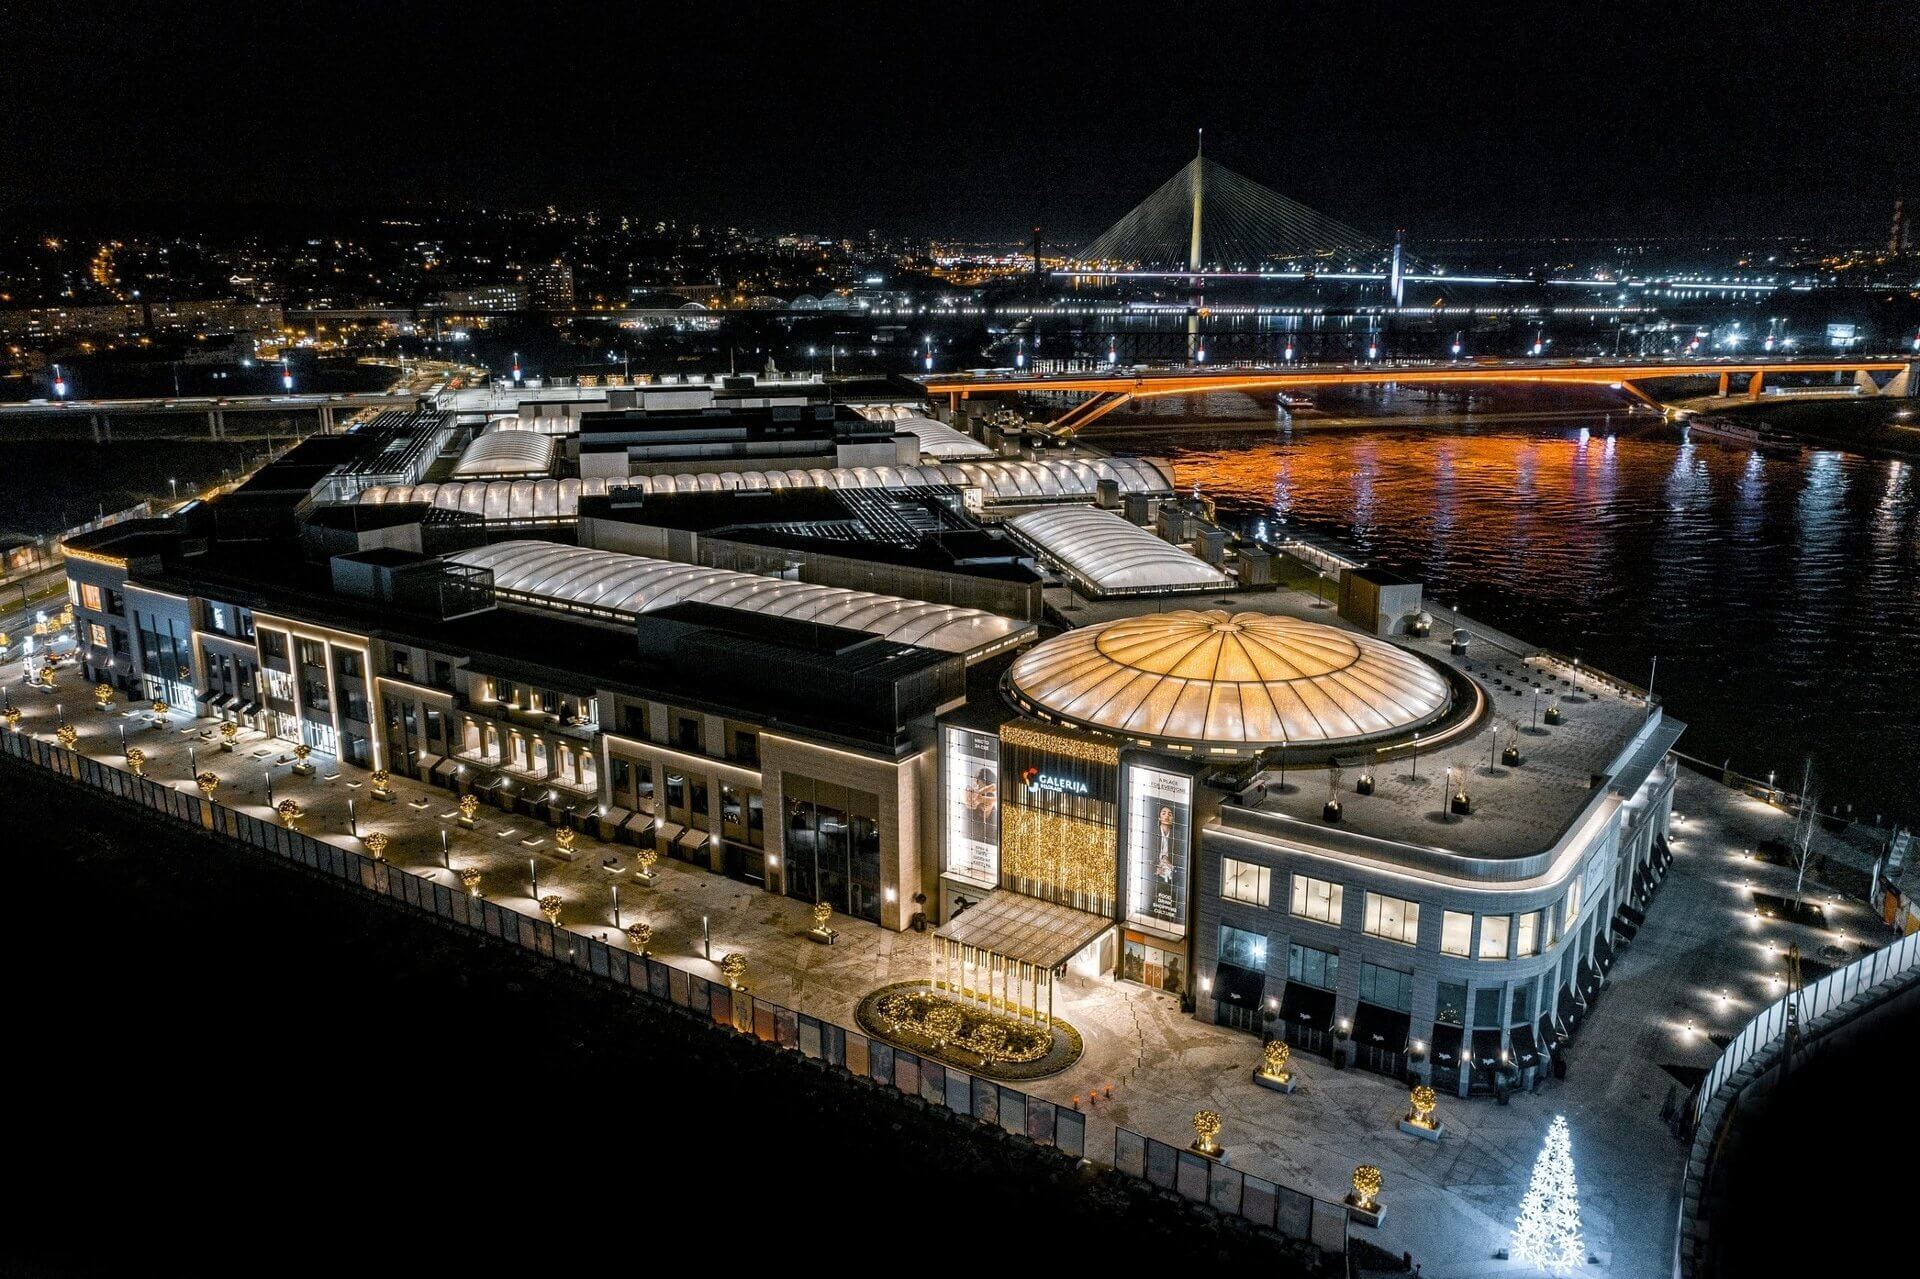 Galerija Belgrade osvojila nagradu za najbolji veliki tržni centar